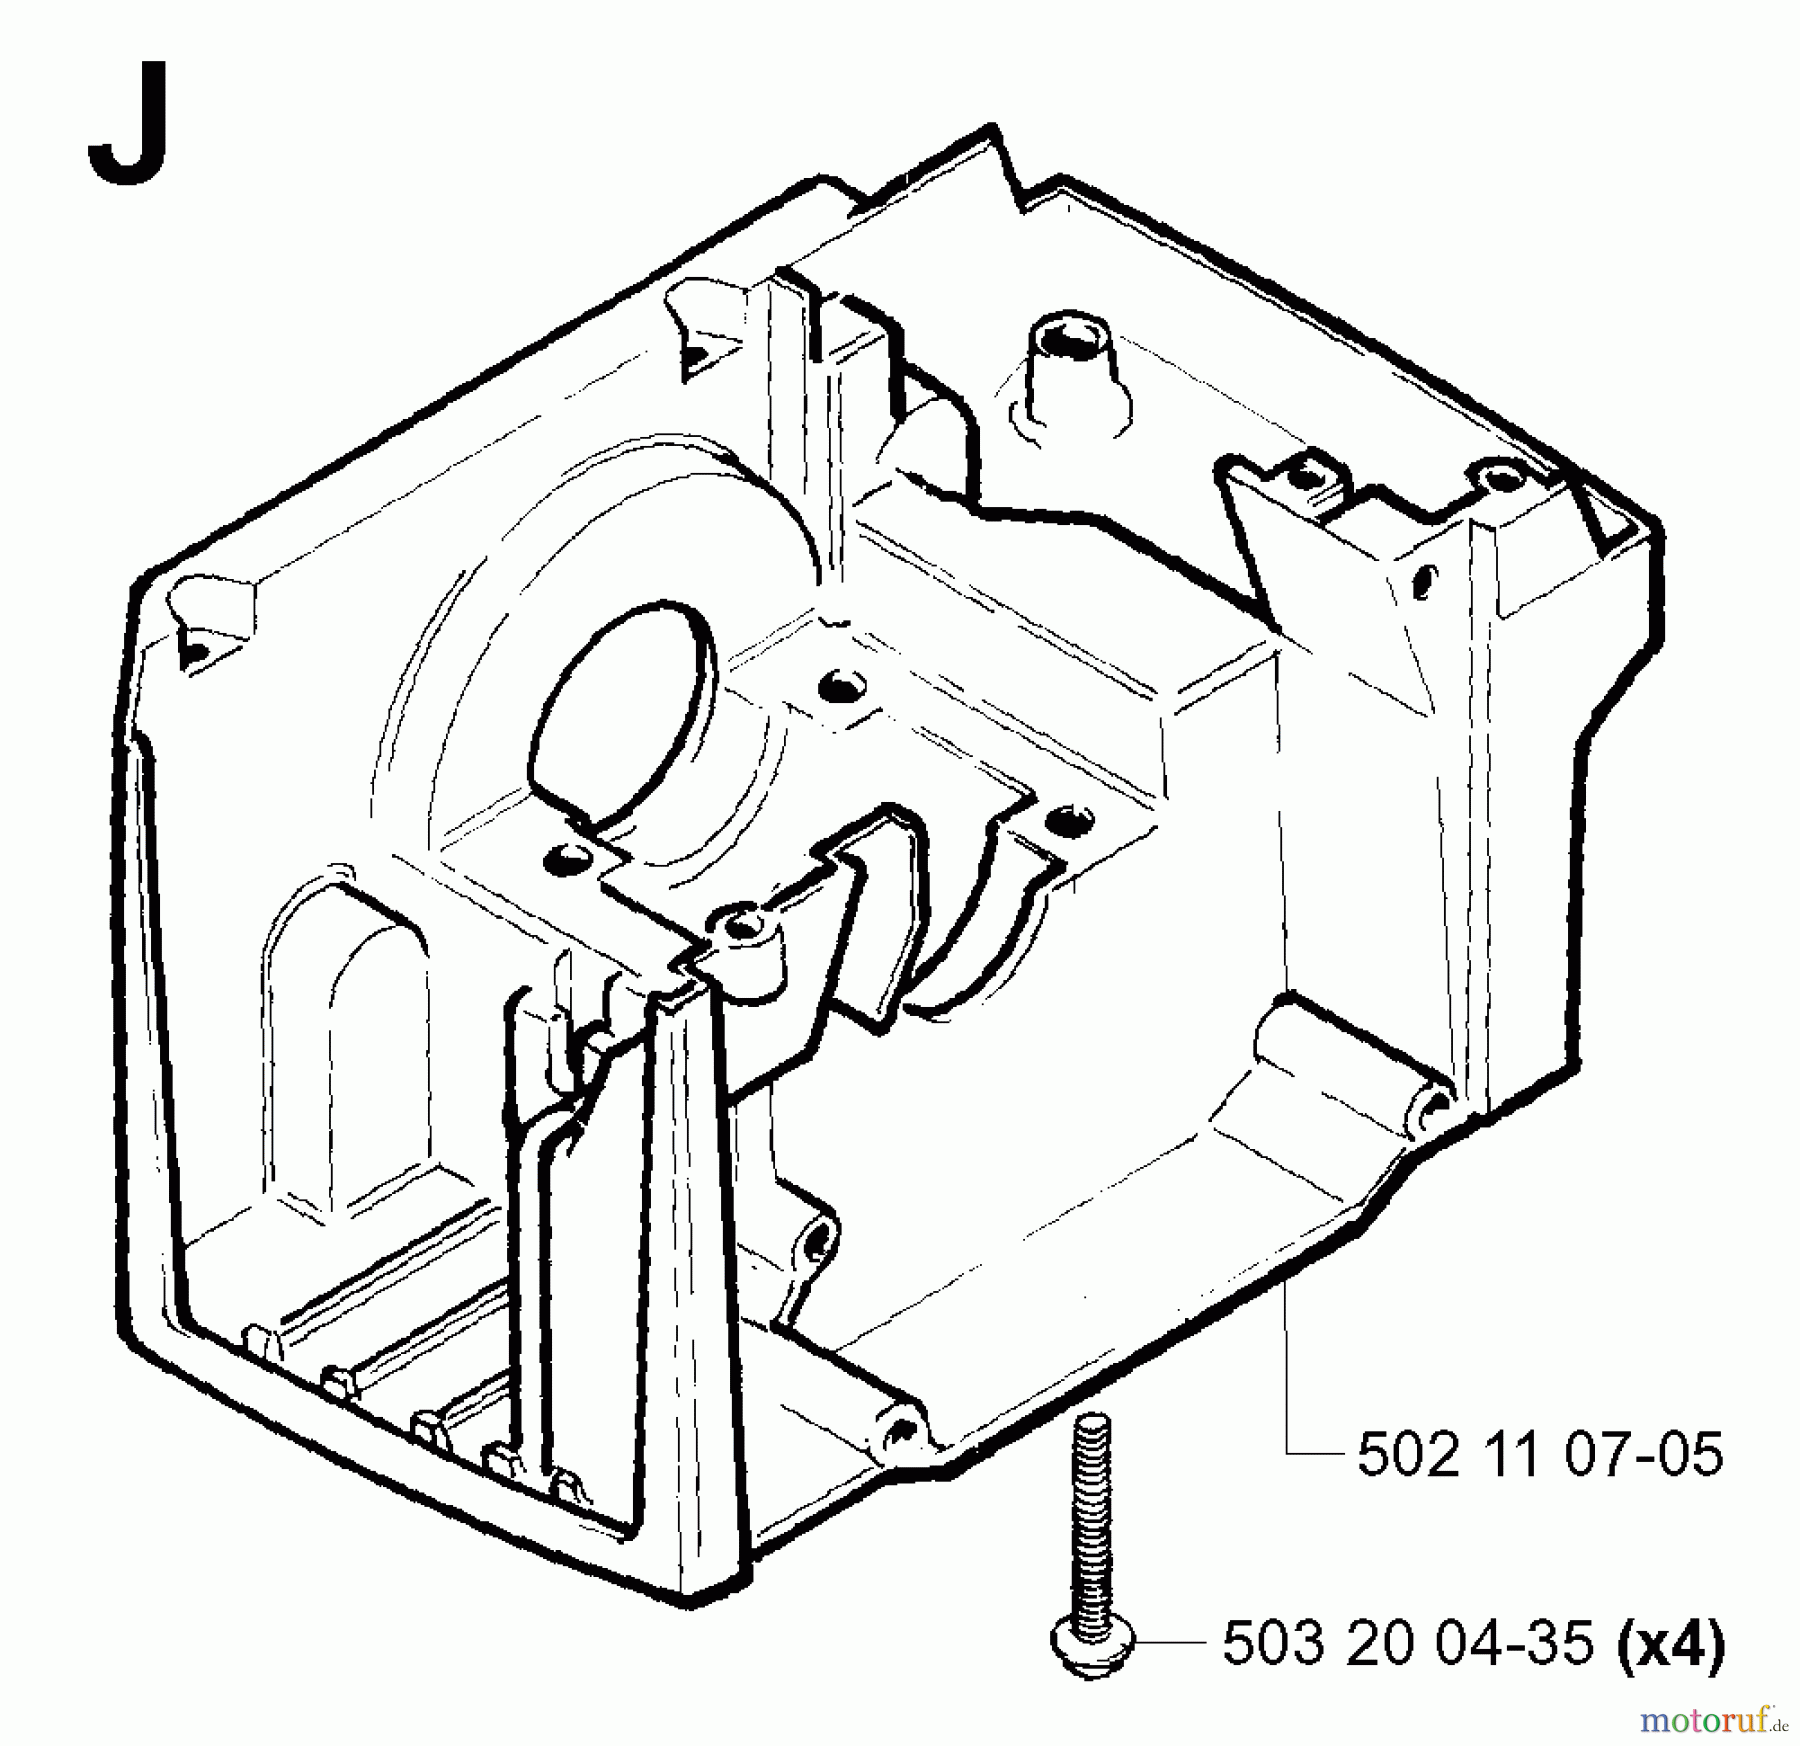  Jonsered Motorsensen, Trimmer RS44 - Jonsered String/Brush Trimmer (2001-03) CRANKCASE